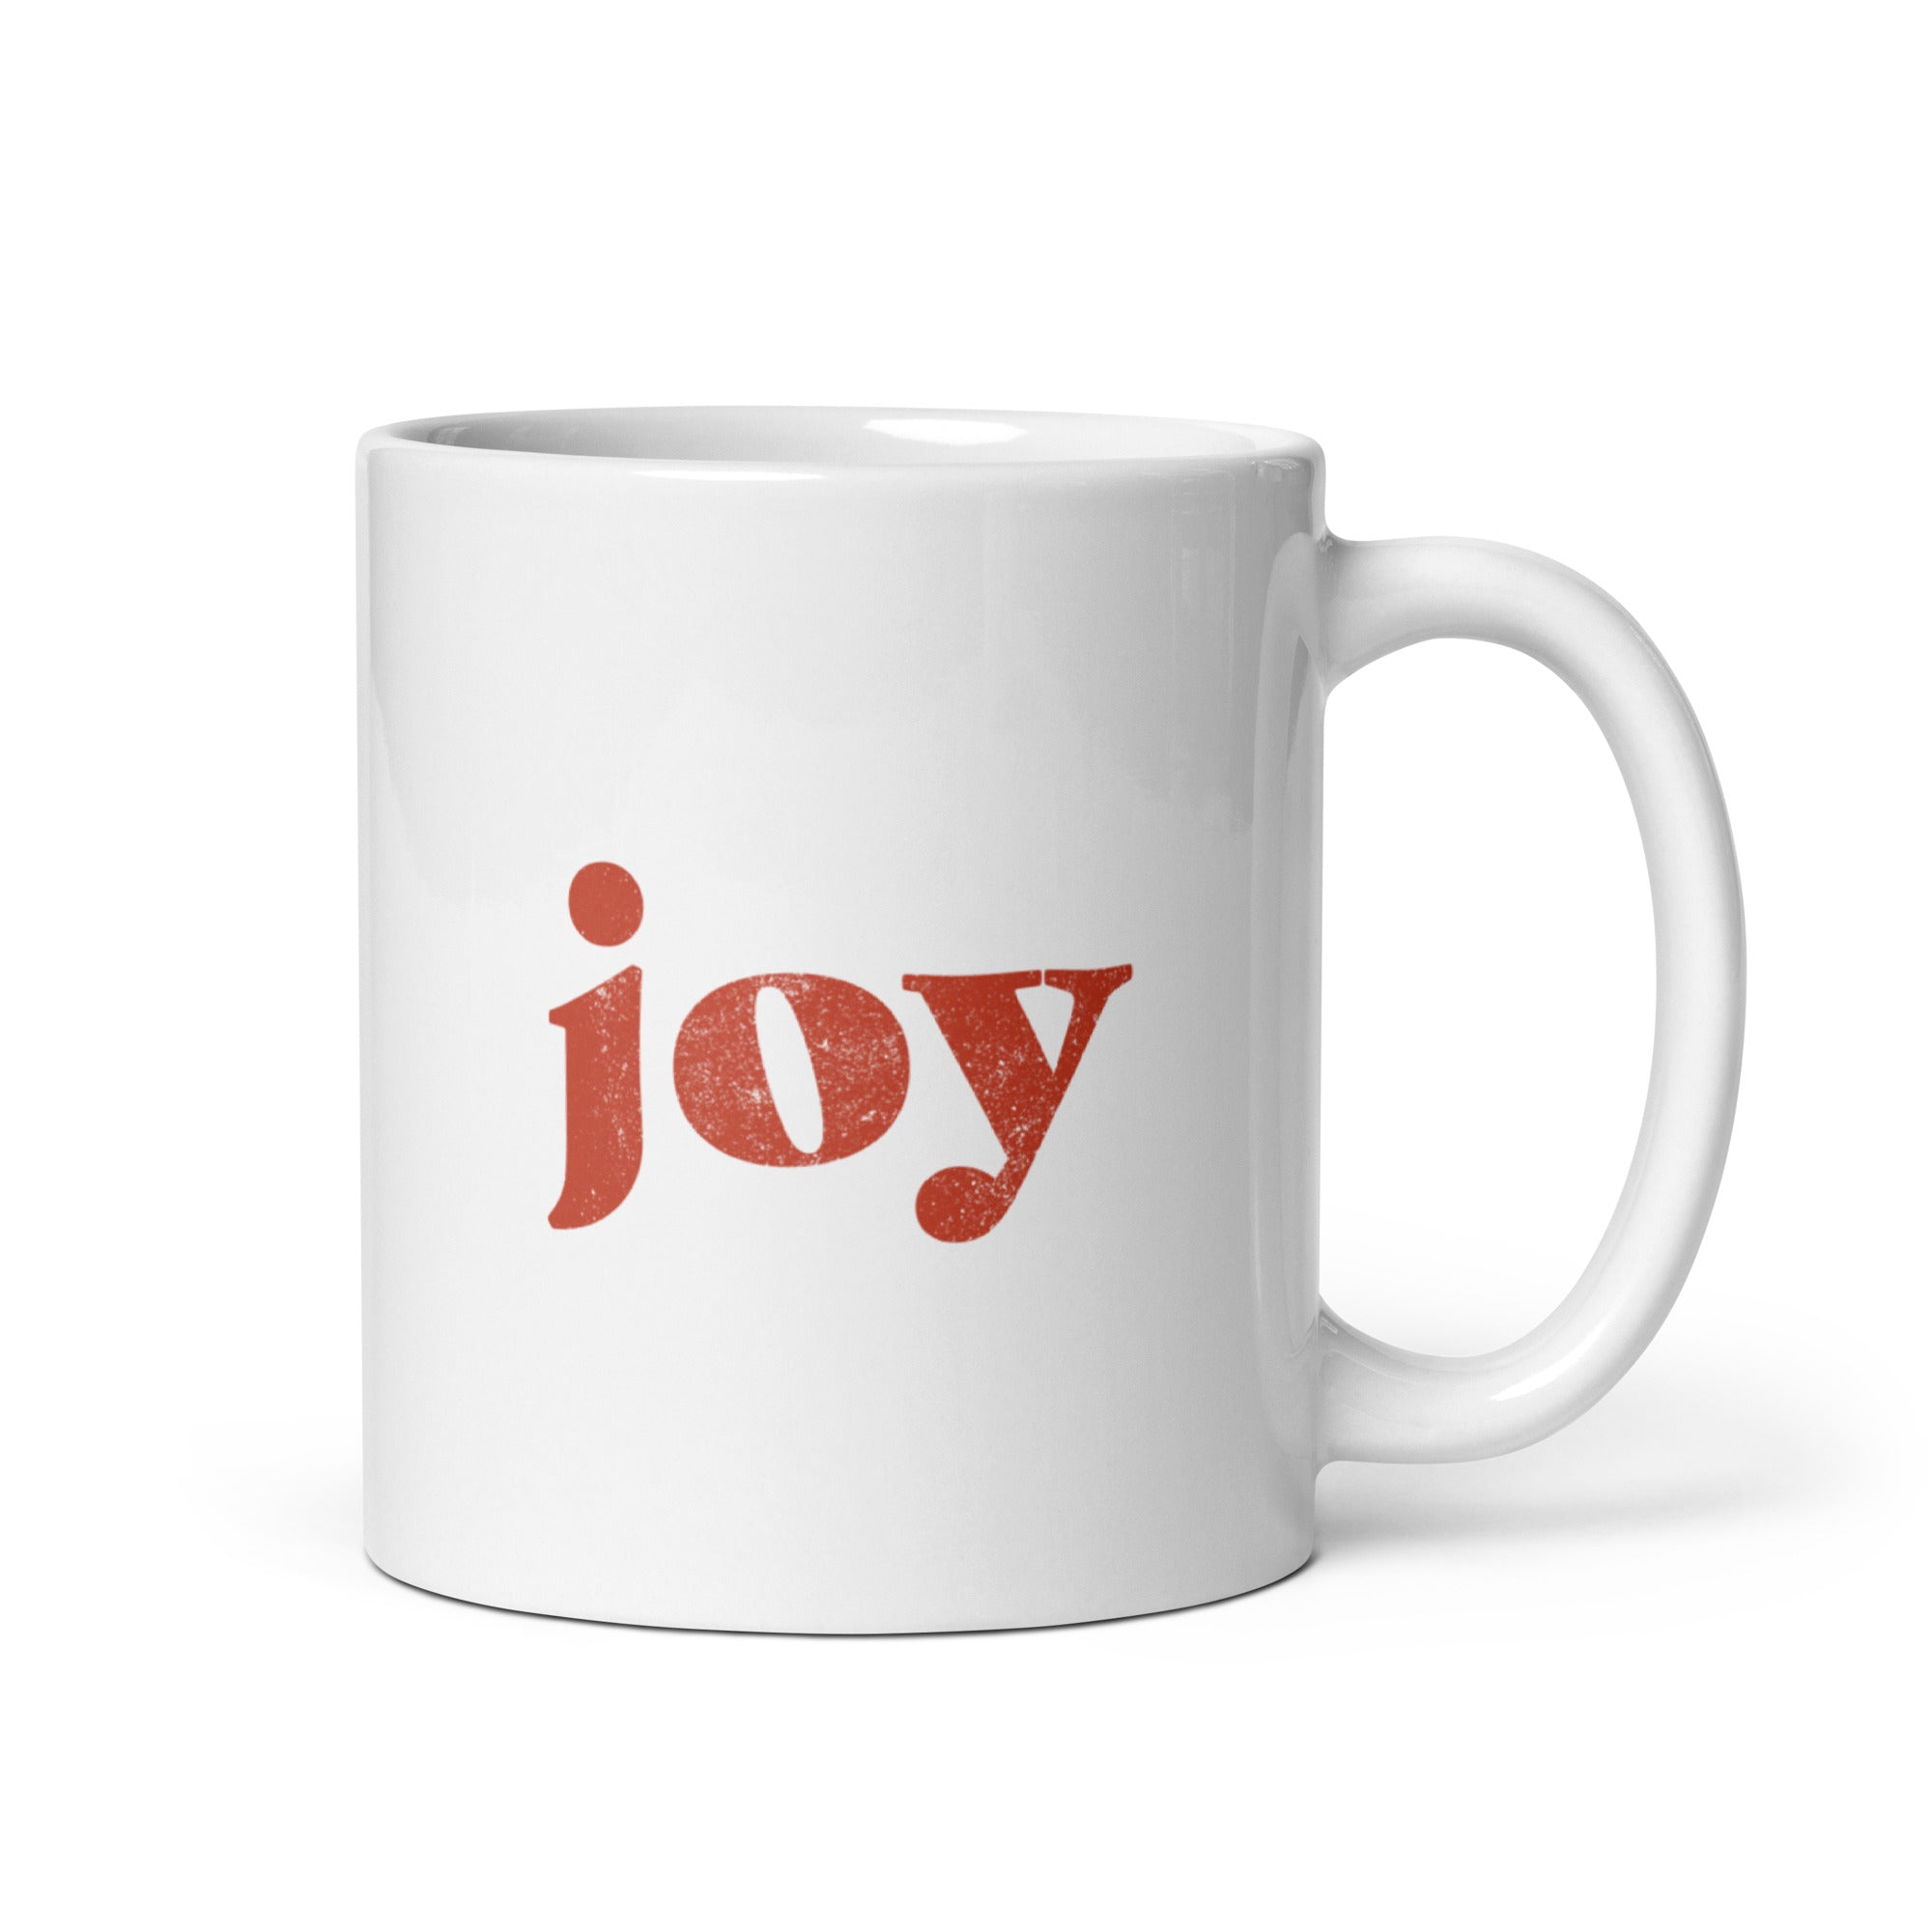 Joy White Glossy Mug